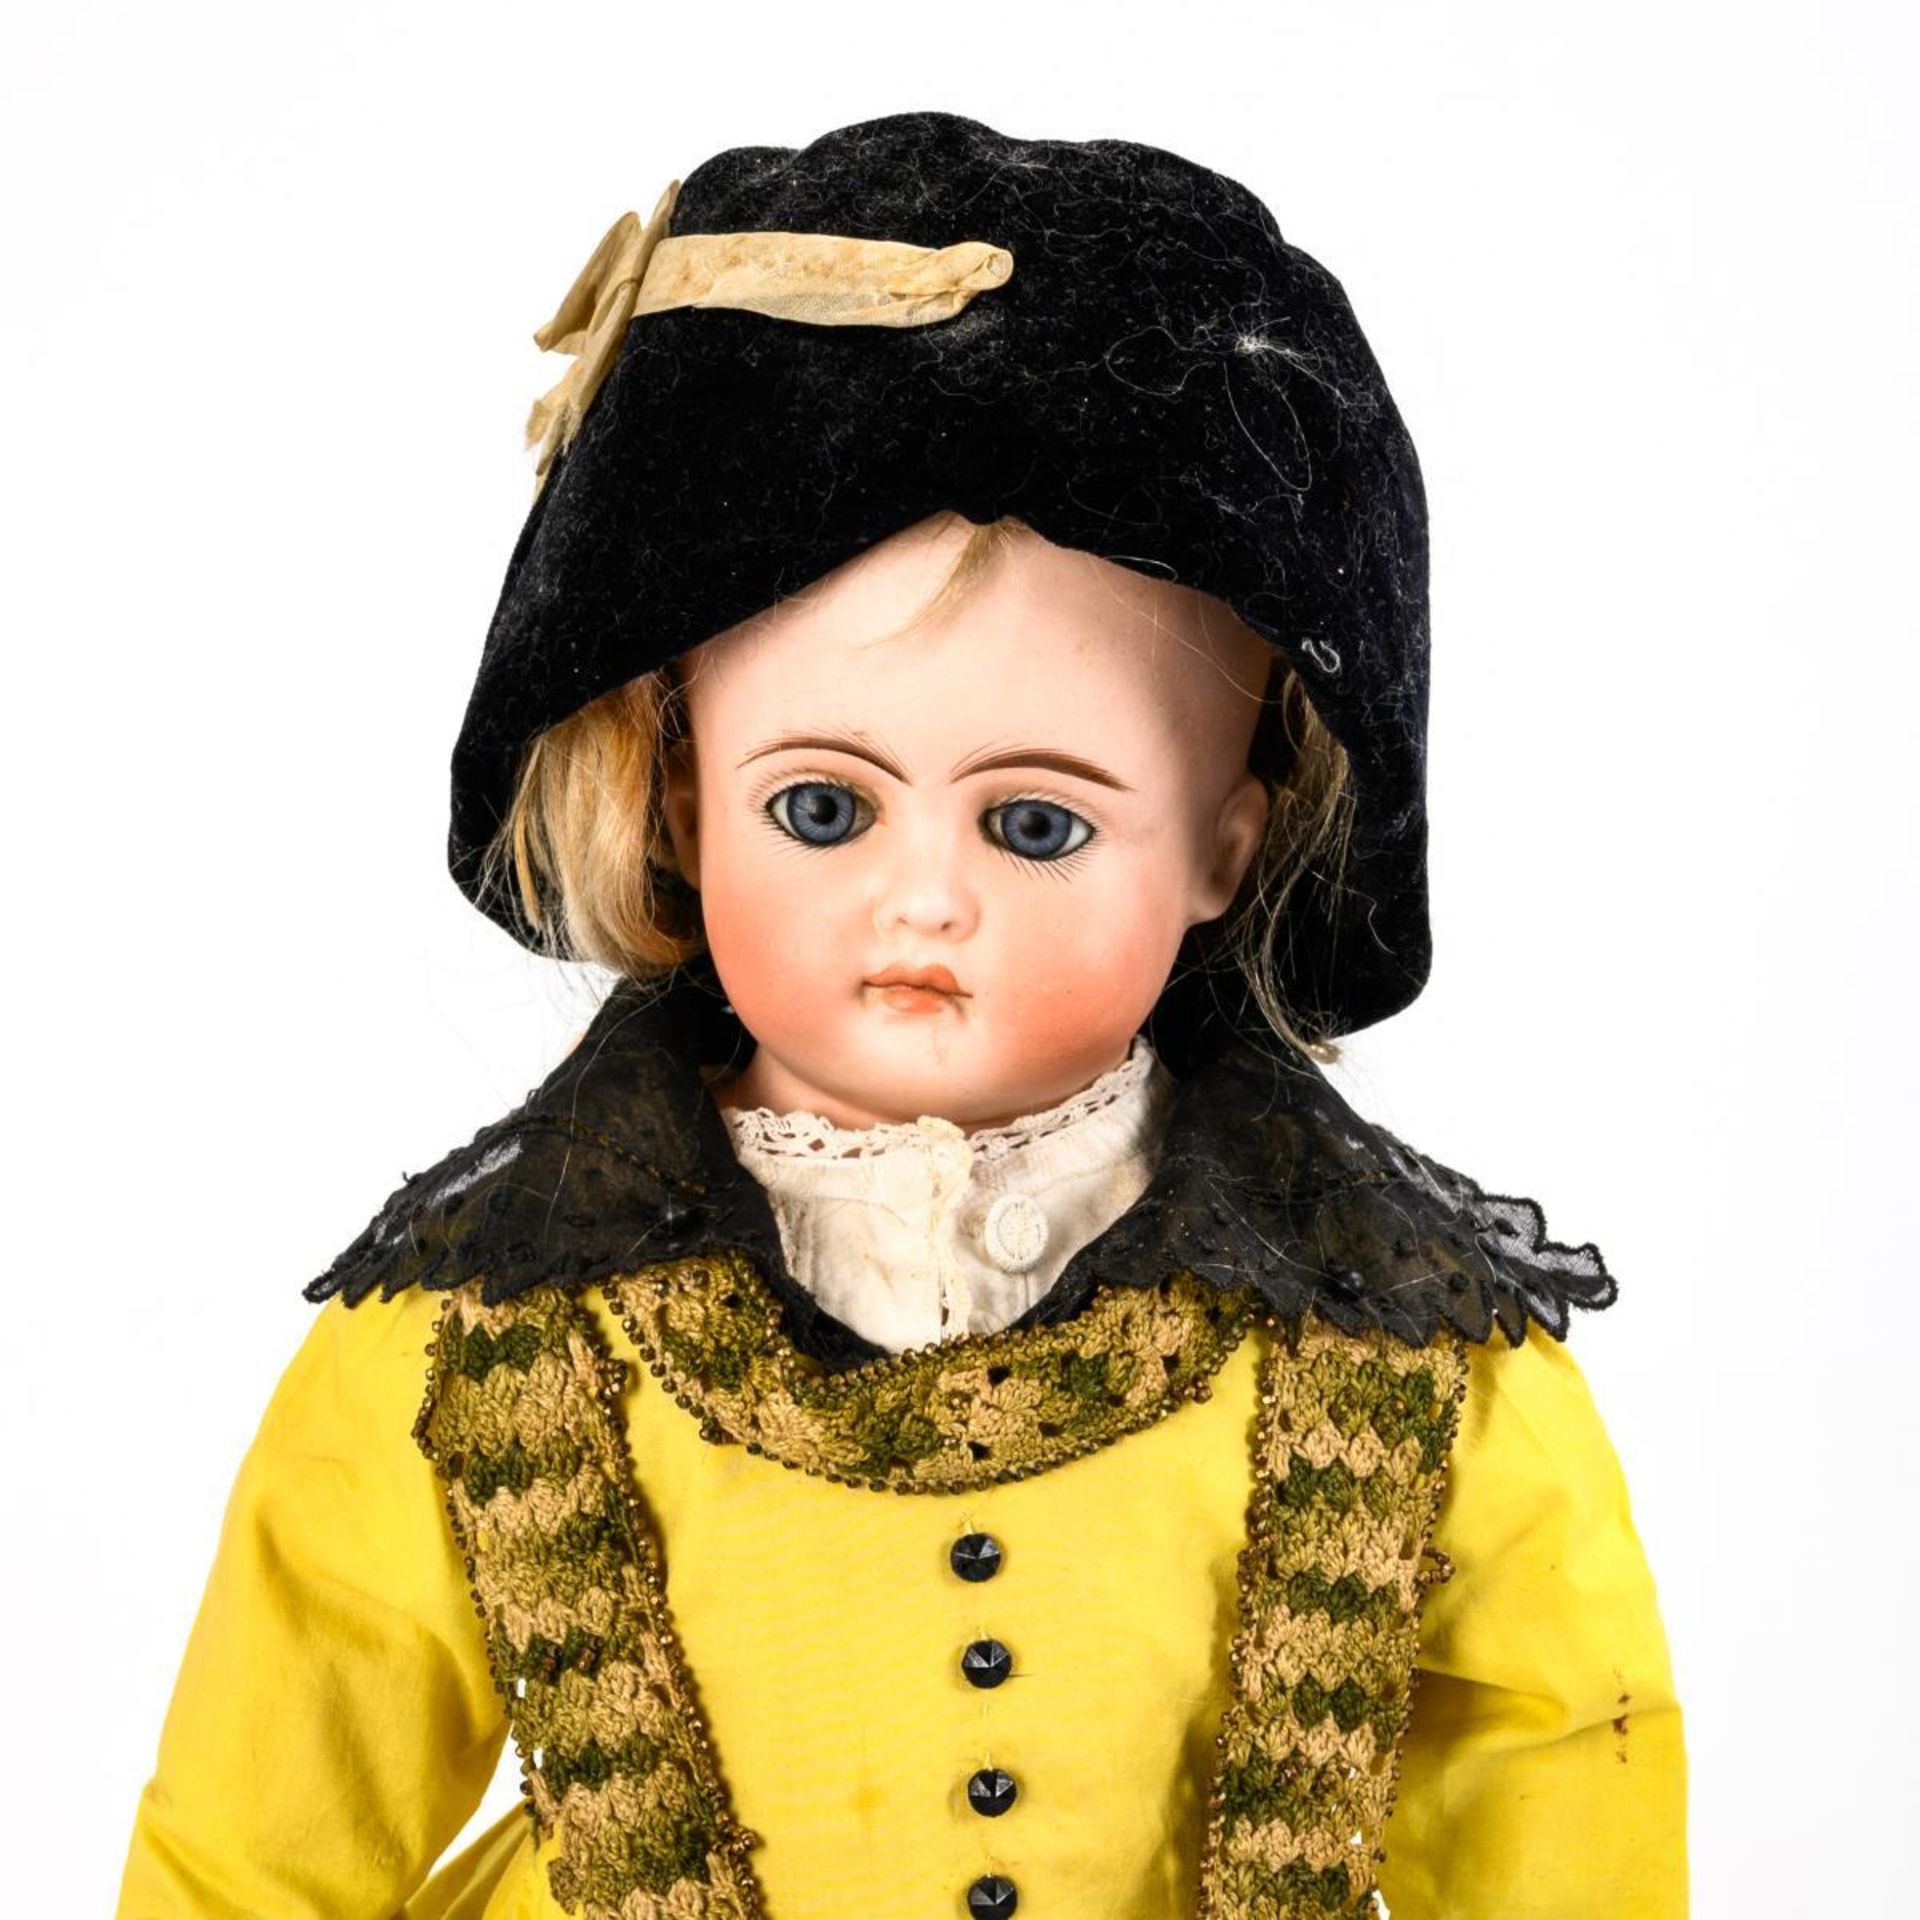 Puppendame in gelbem Kleid.  C. F. Kling. - Bild 2 aus 6